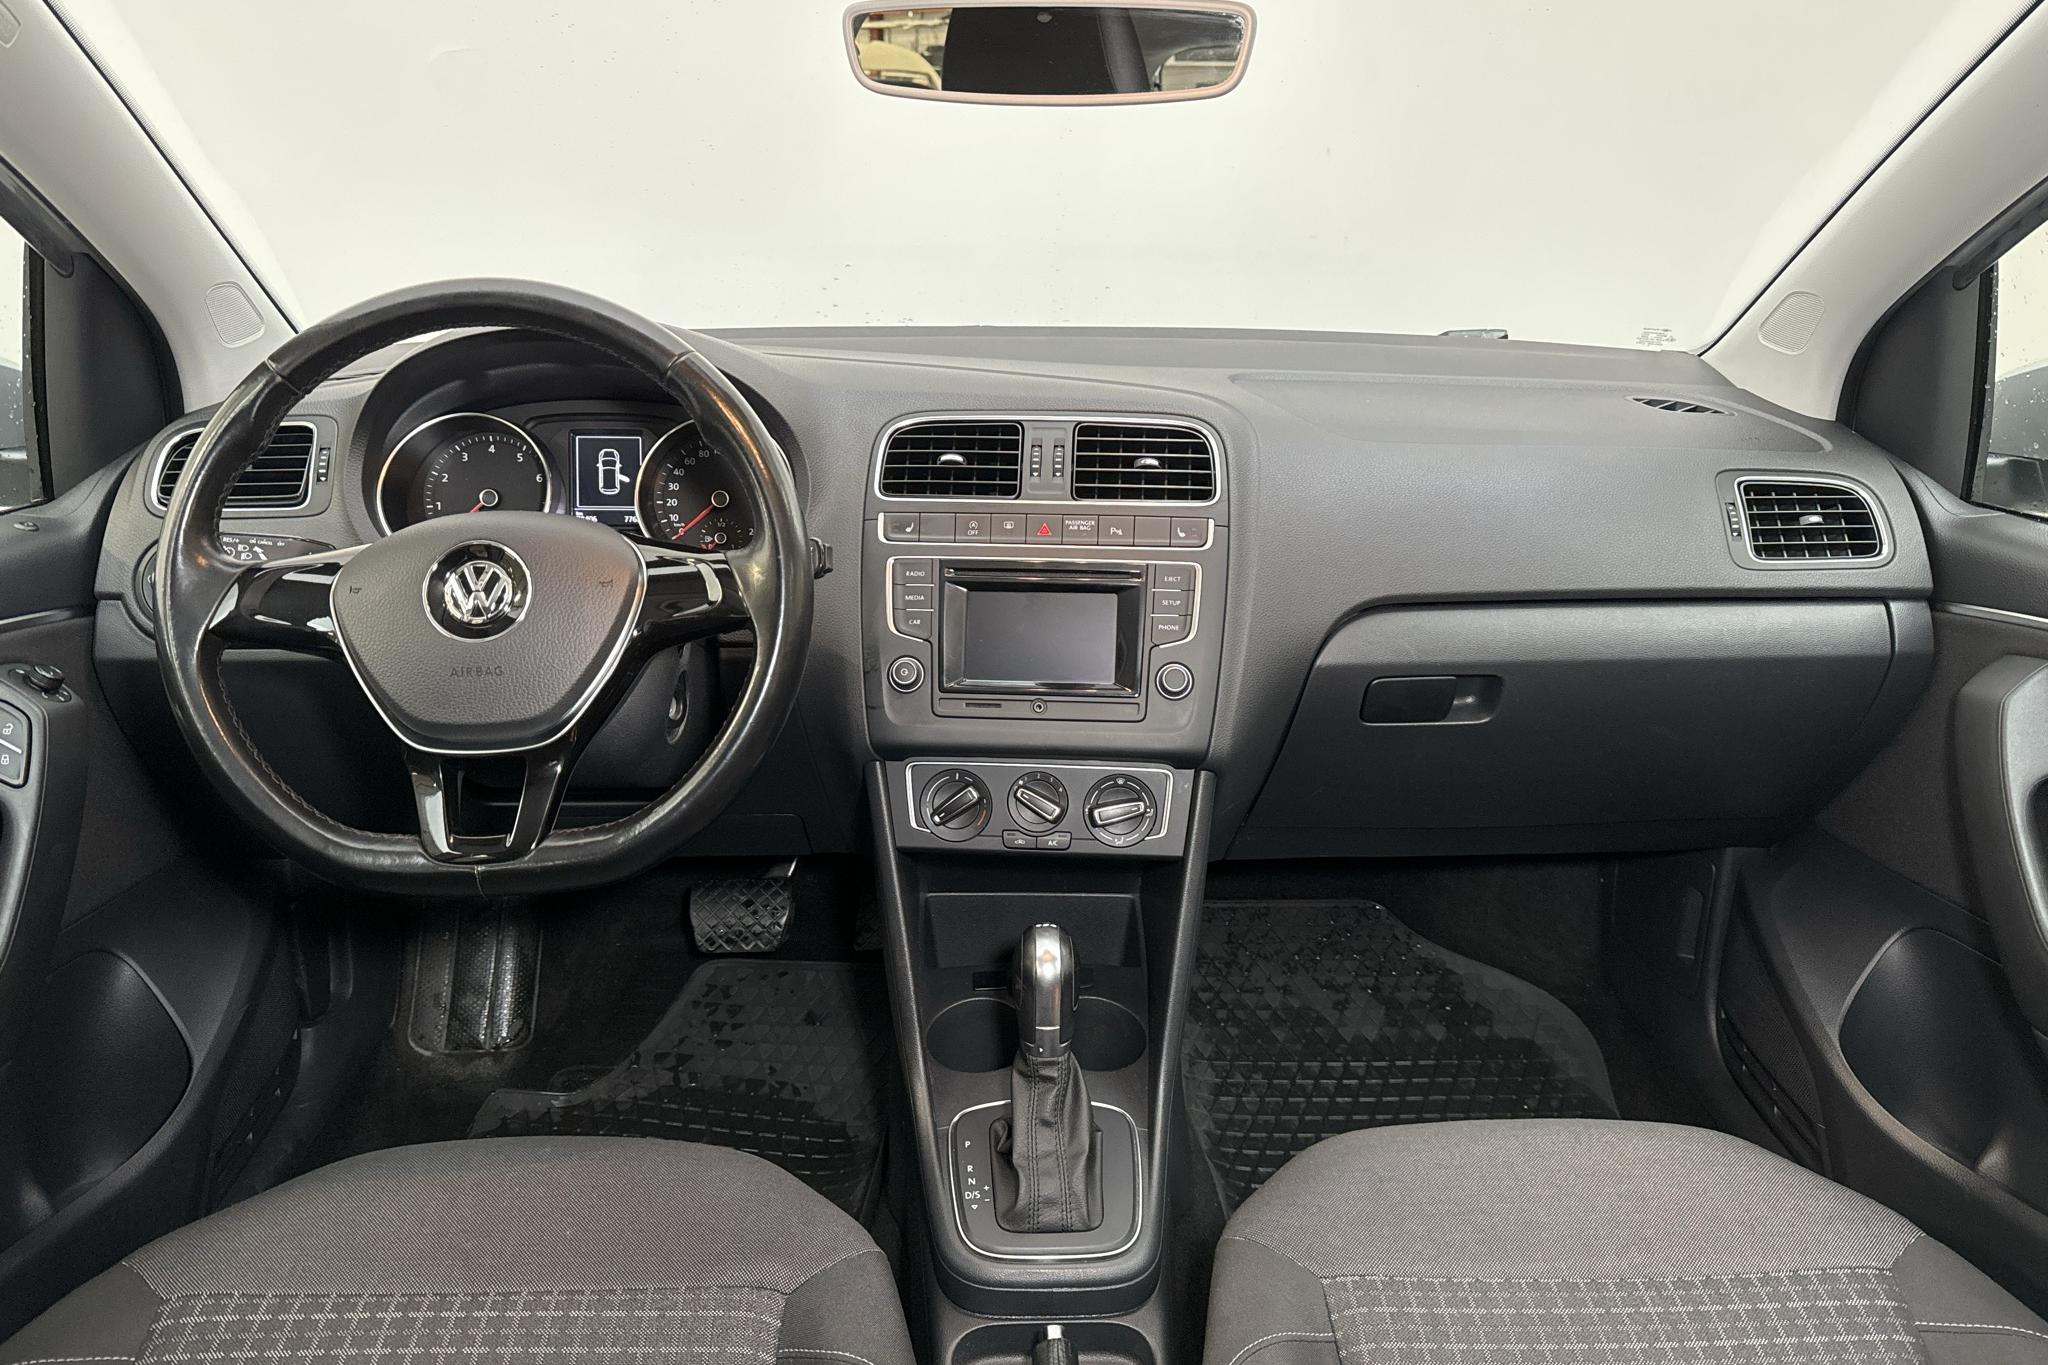 VW Polo 1.2 TSI 5dr (90hk) - 7 840 mil - Automat - silver - 2017